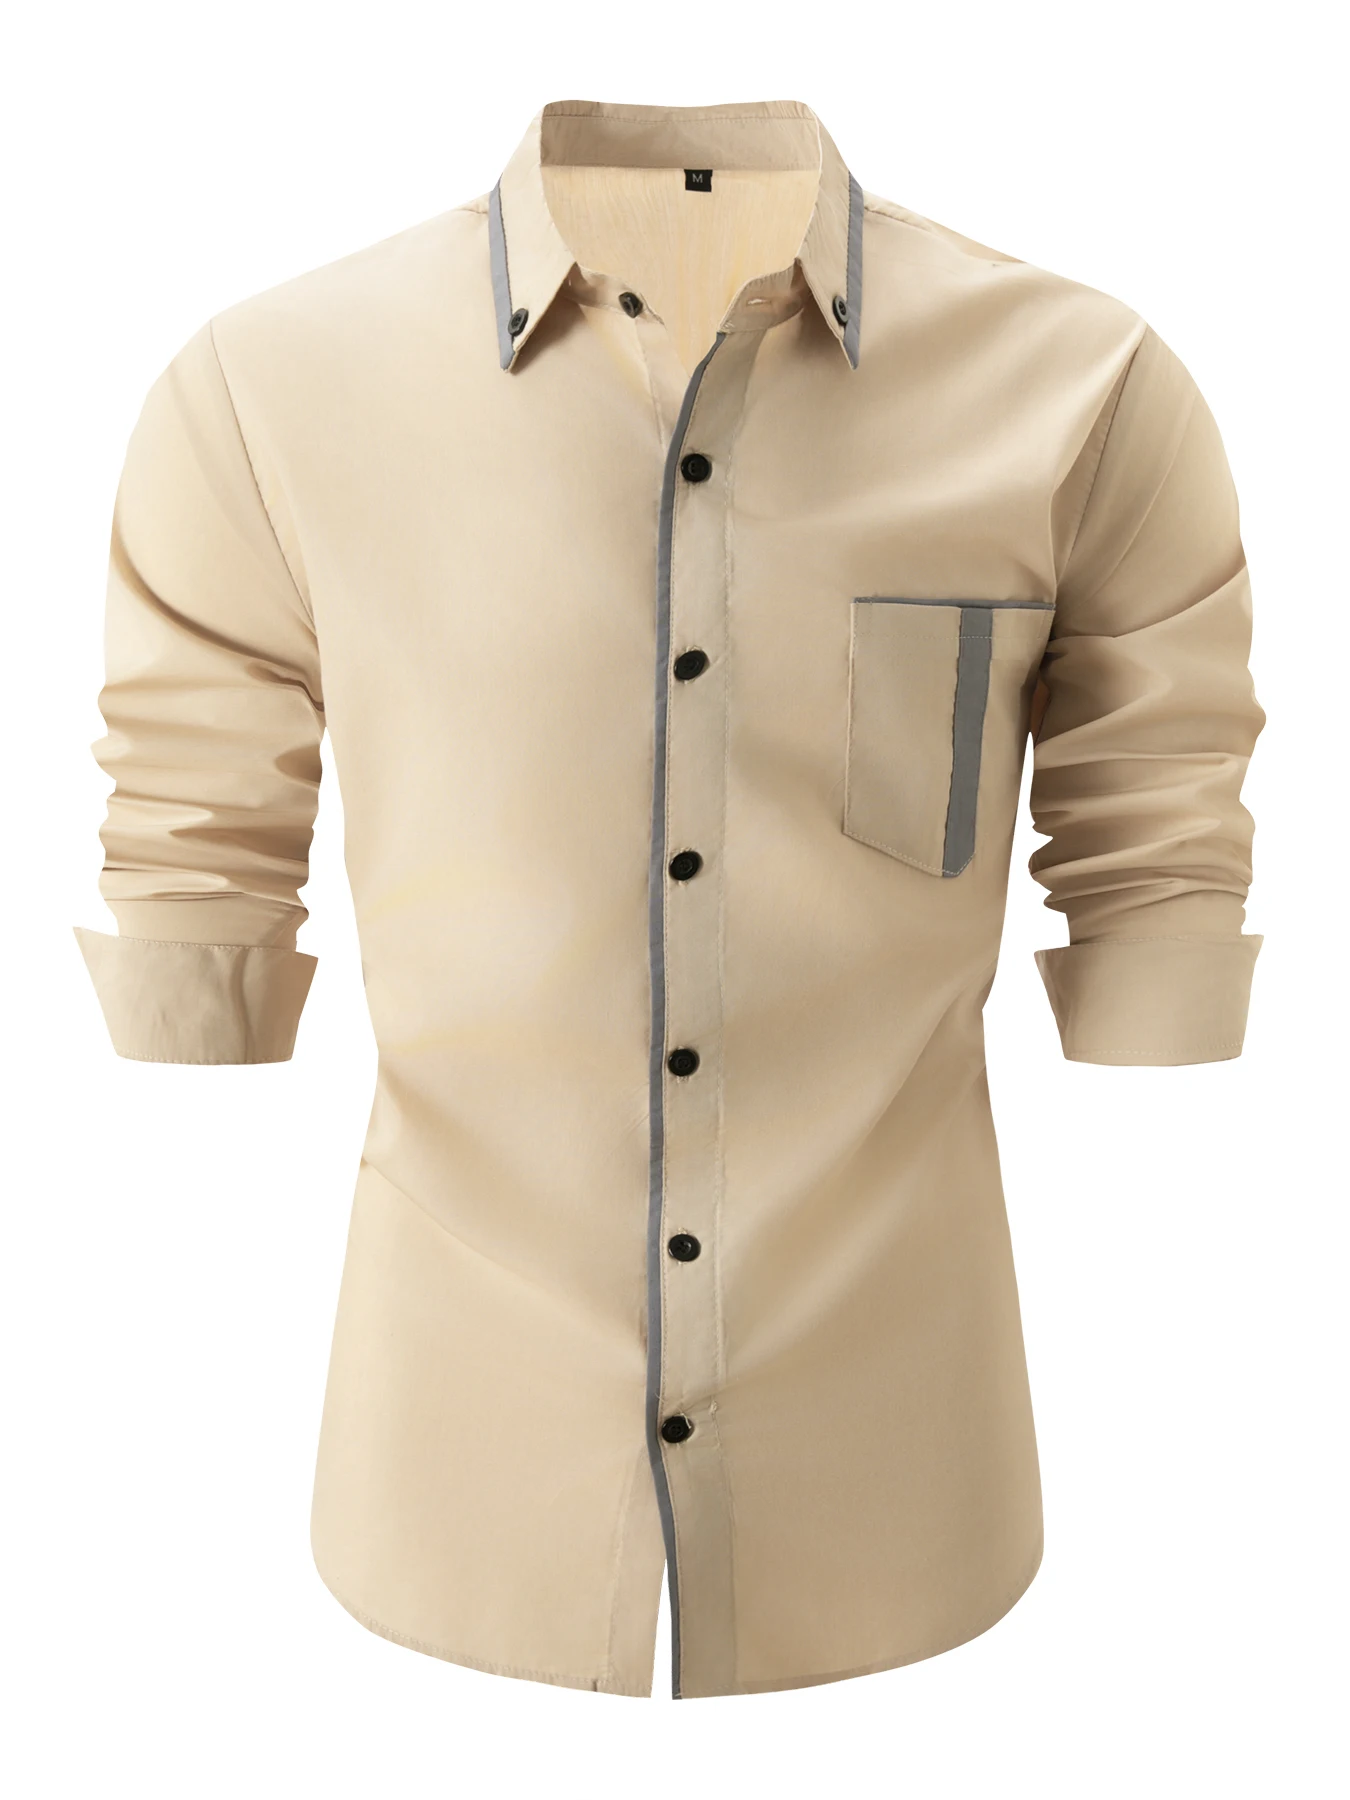 Nuova camicia Casual primavera autunno tasca da uomo allentata tinta unita camicia a maniche lunghe camicie con bottoni Vintage